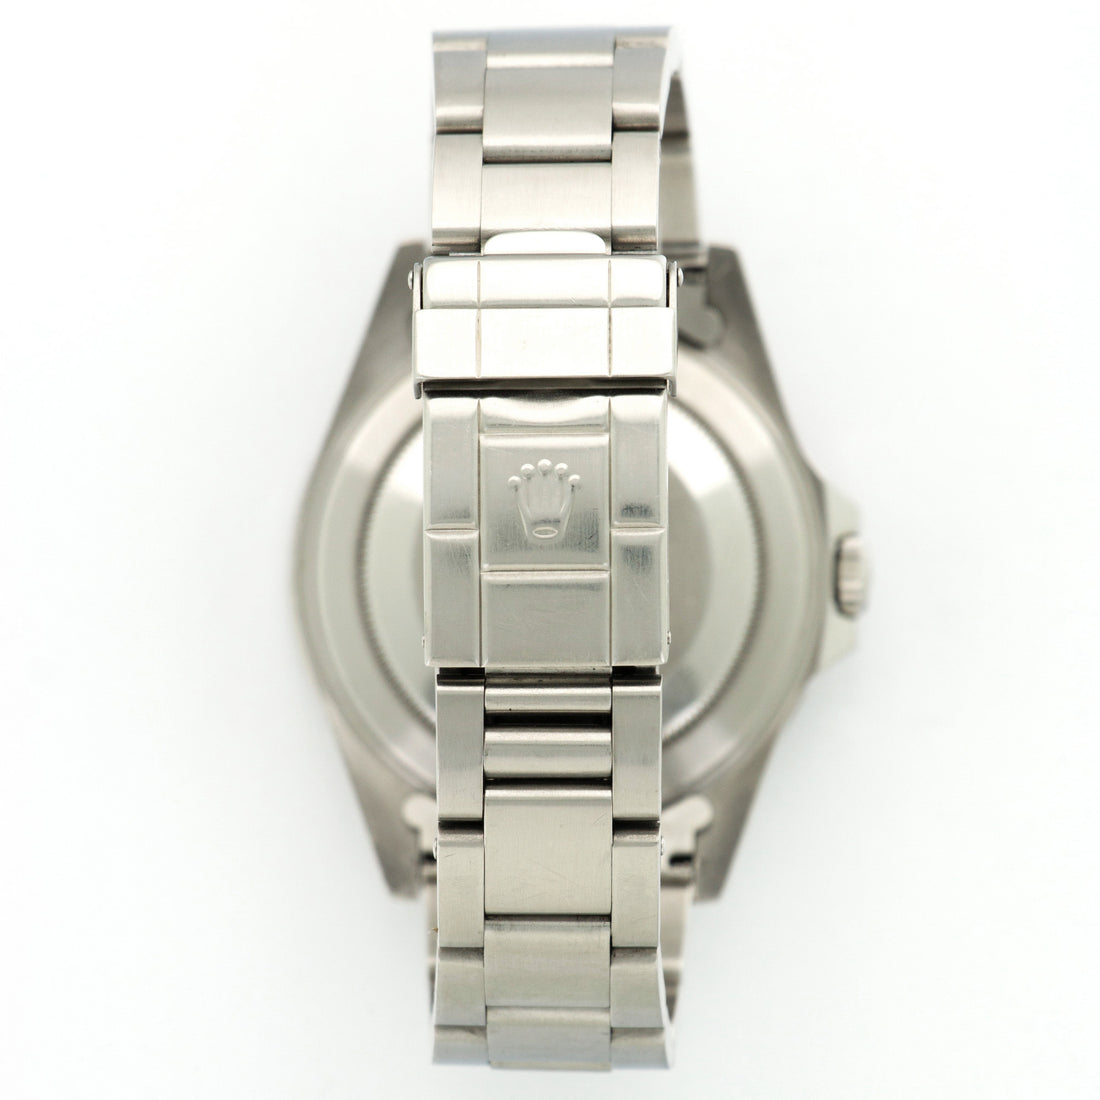 Rolex GMT-Master II Coke Watch Ref. 16710